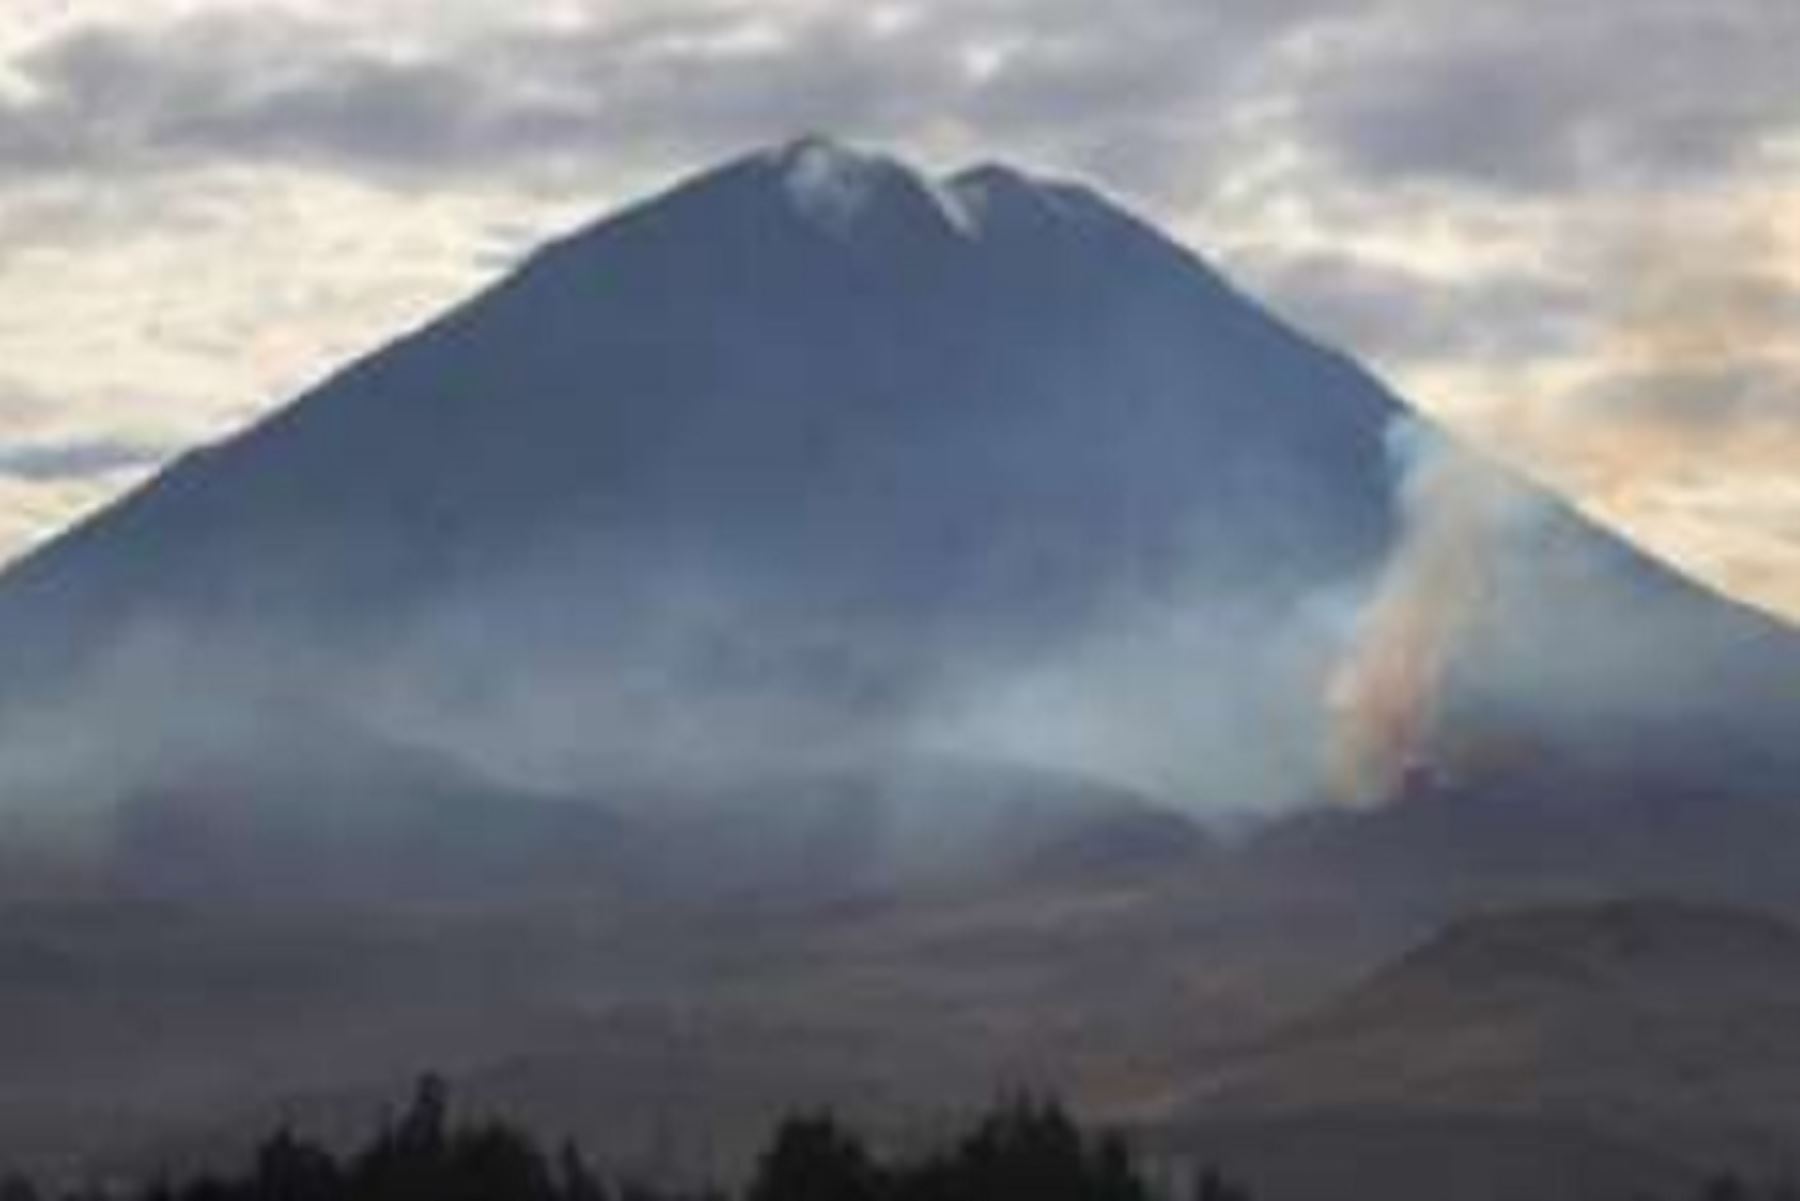 El Centro de Operaciones de Emergencia Regional (COER) Arequipa envió una cuadrilla a la zona donde el 28 de julio e desató el incendio forestal en las faldas del volcán Misti, límite entre los distritos de Miraflores y Mariano Melgar, provincia de Arequipa, con el objetivo de extinguir el fuego.